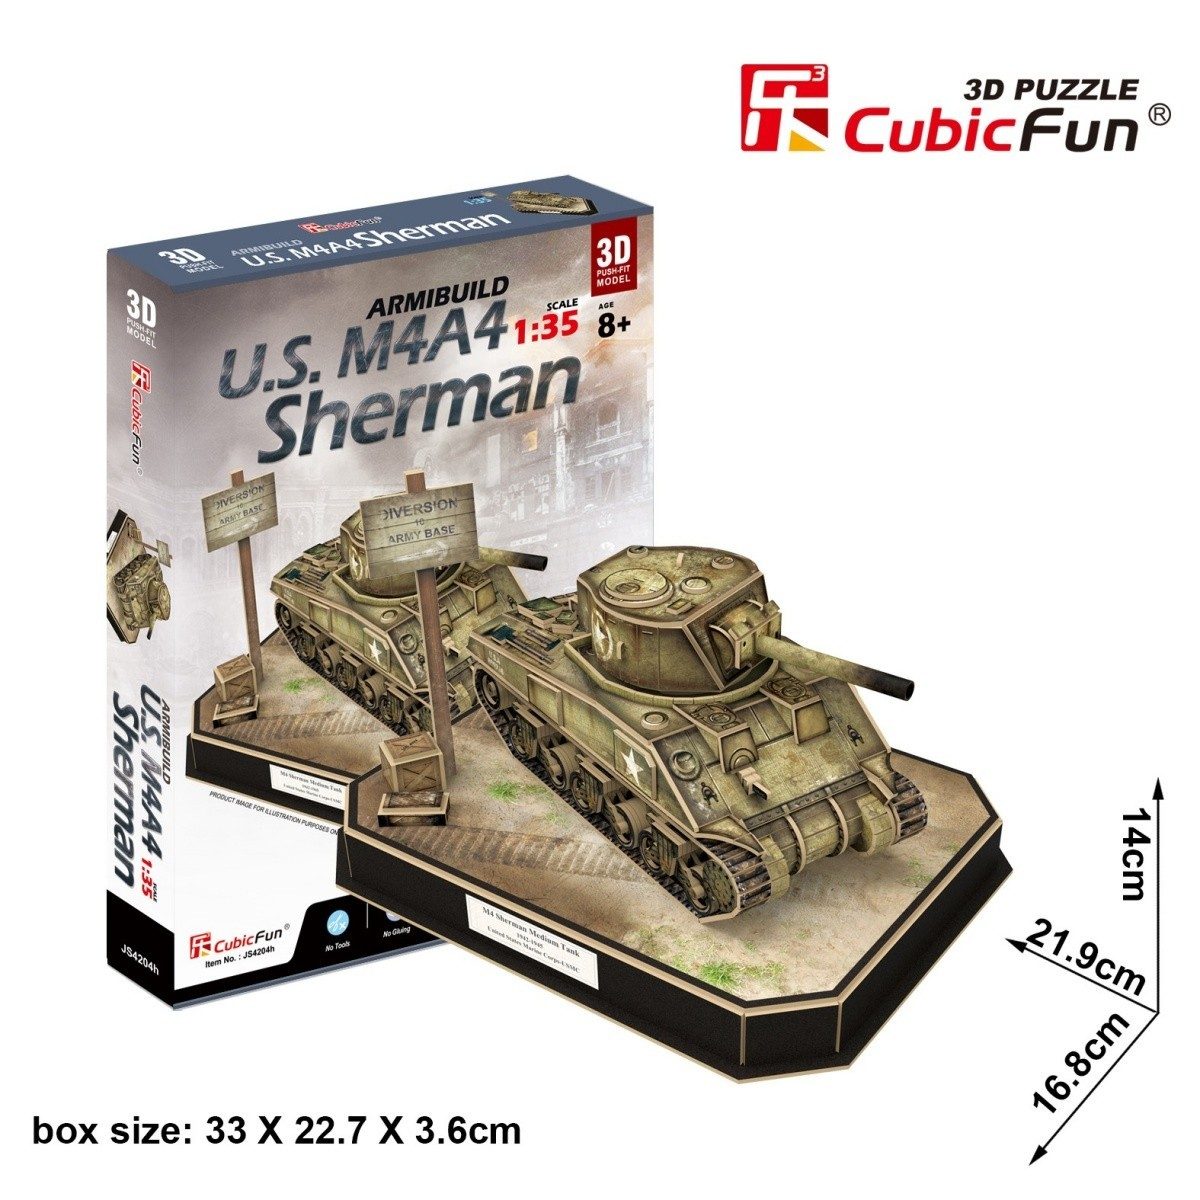 Puzzle Carro armato U.S. M4A4 Sherman 3D